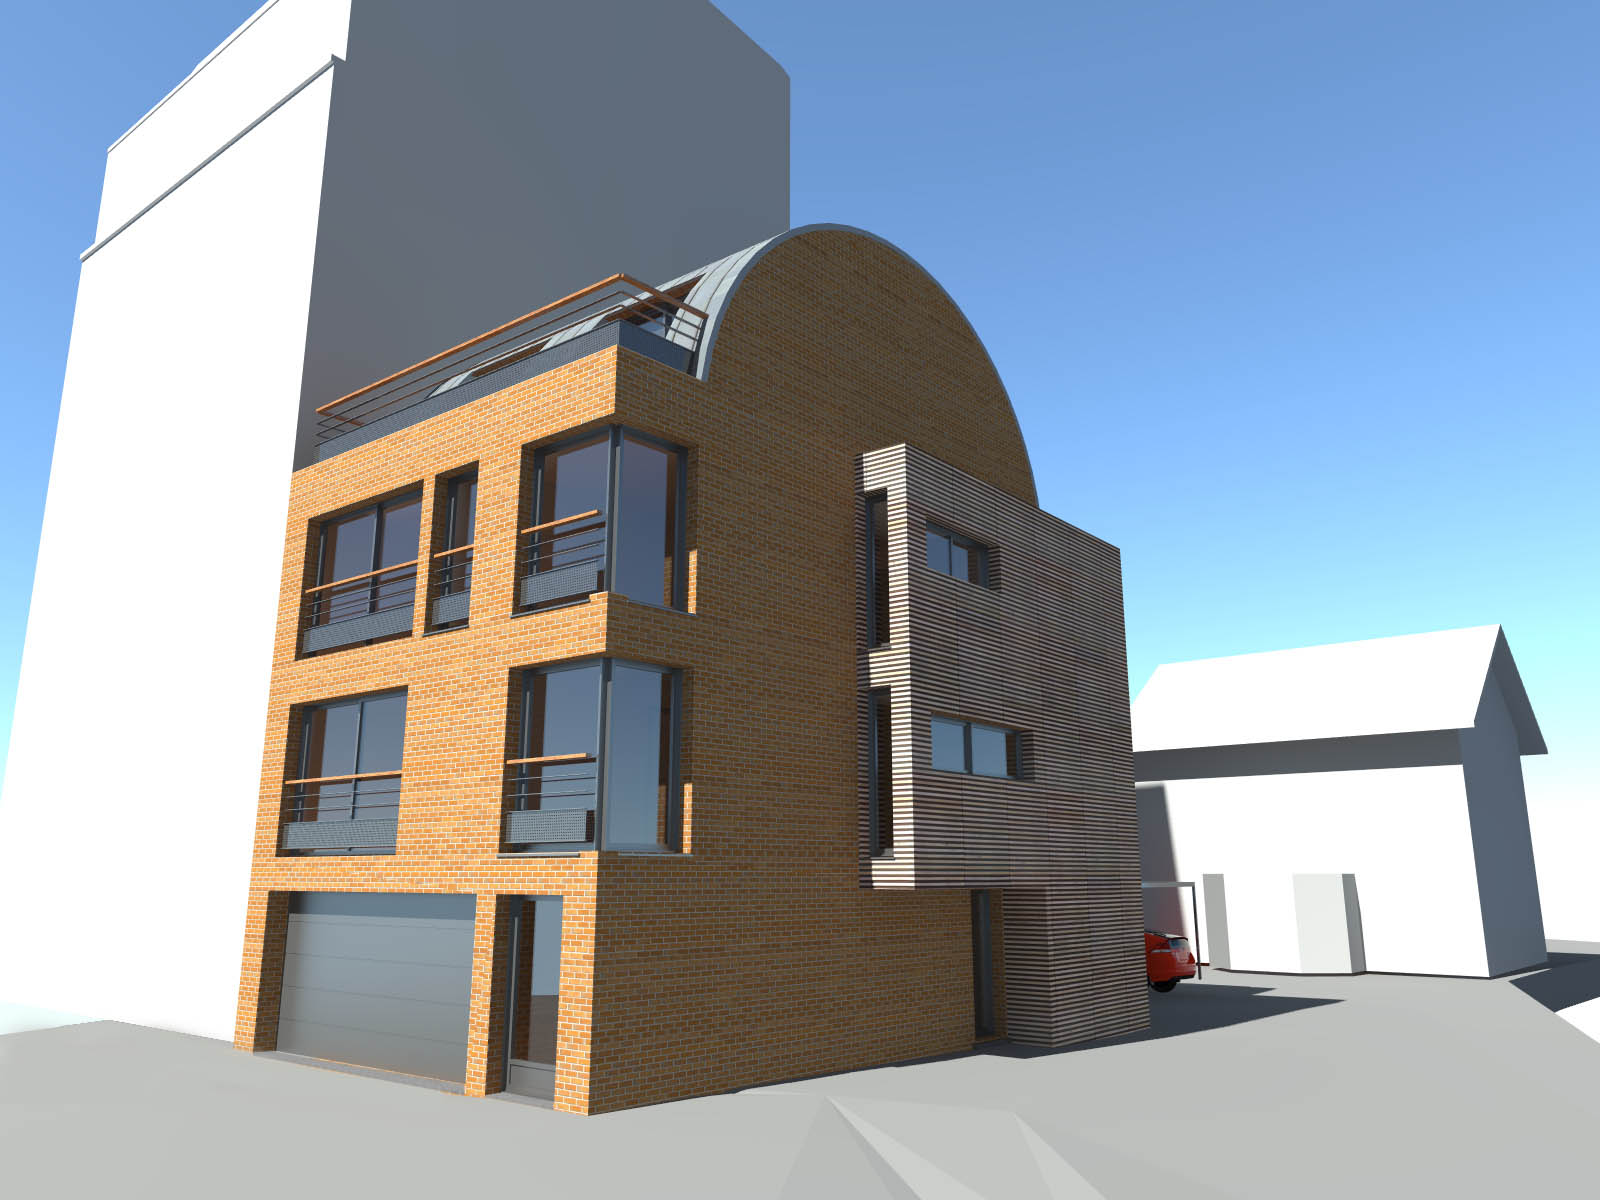 philippe_zerbib_architecte_construction_maisons_ossature_bois_projet_des dorides-view 0_1